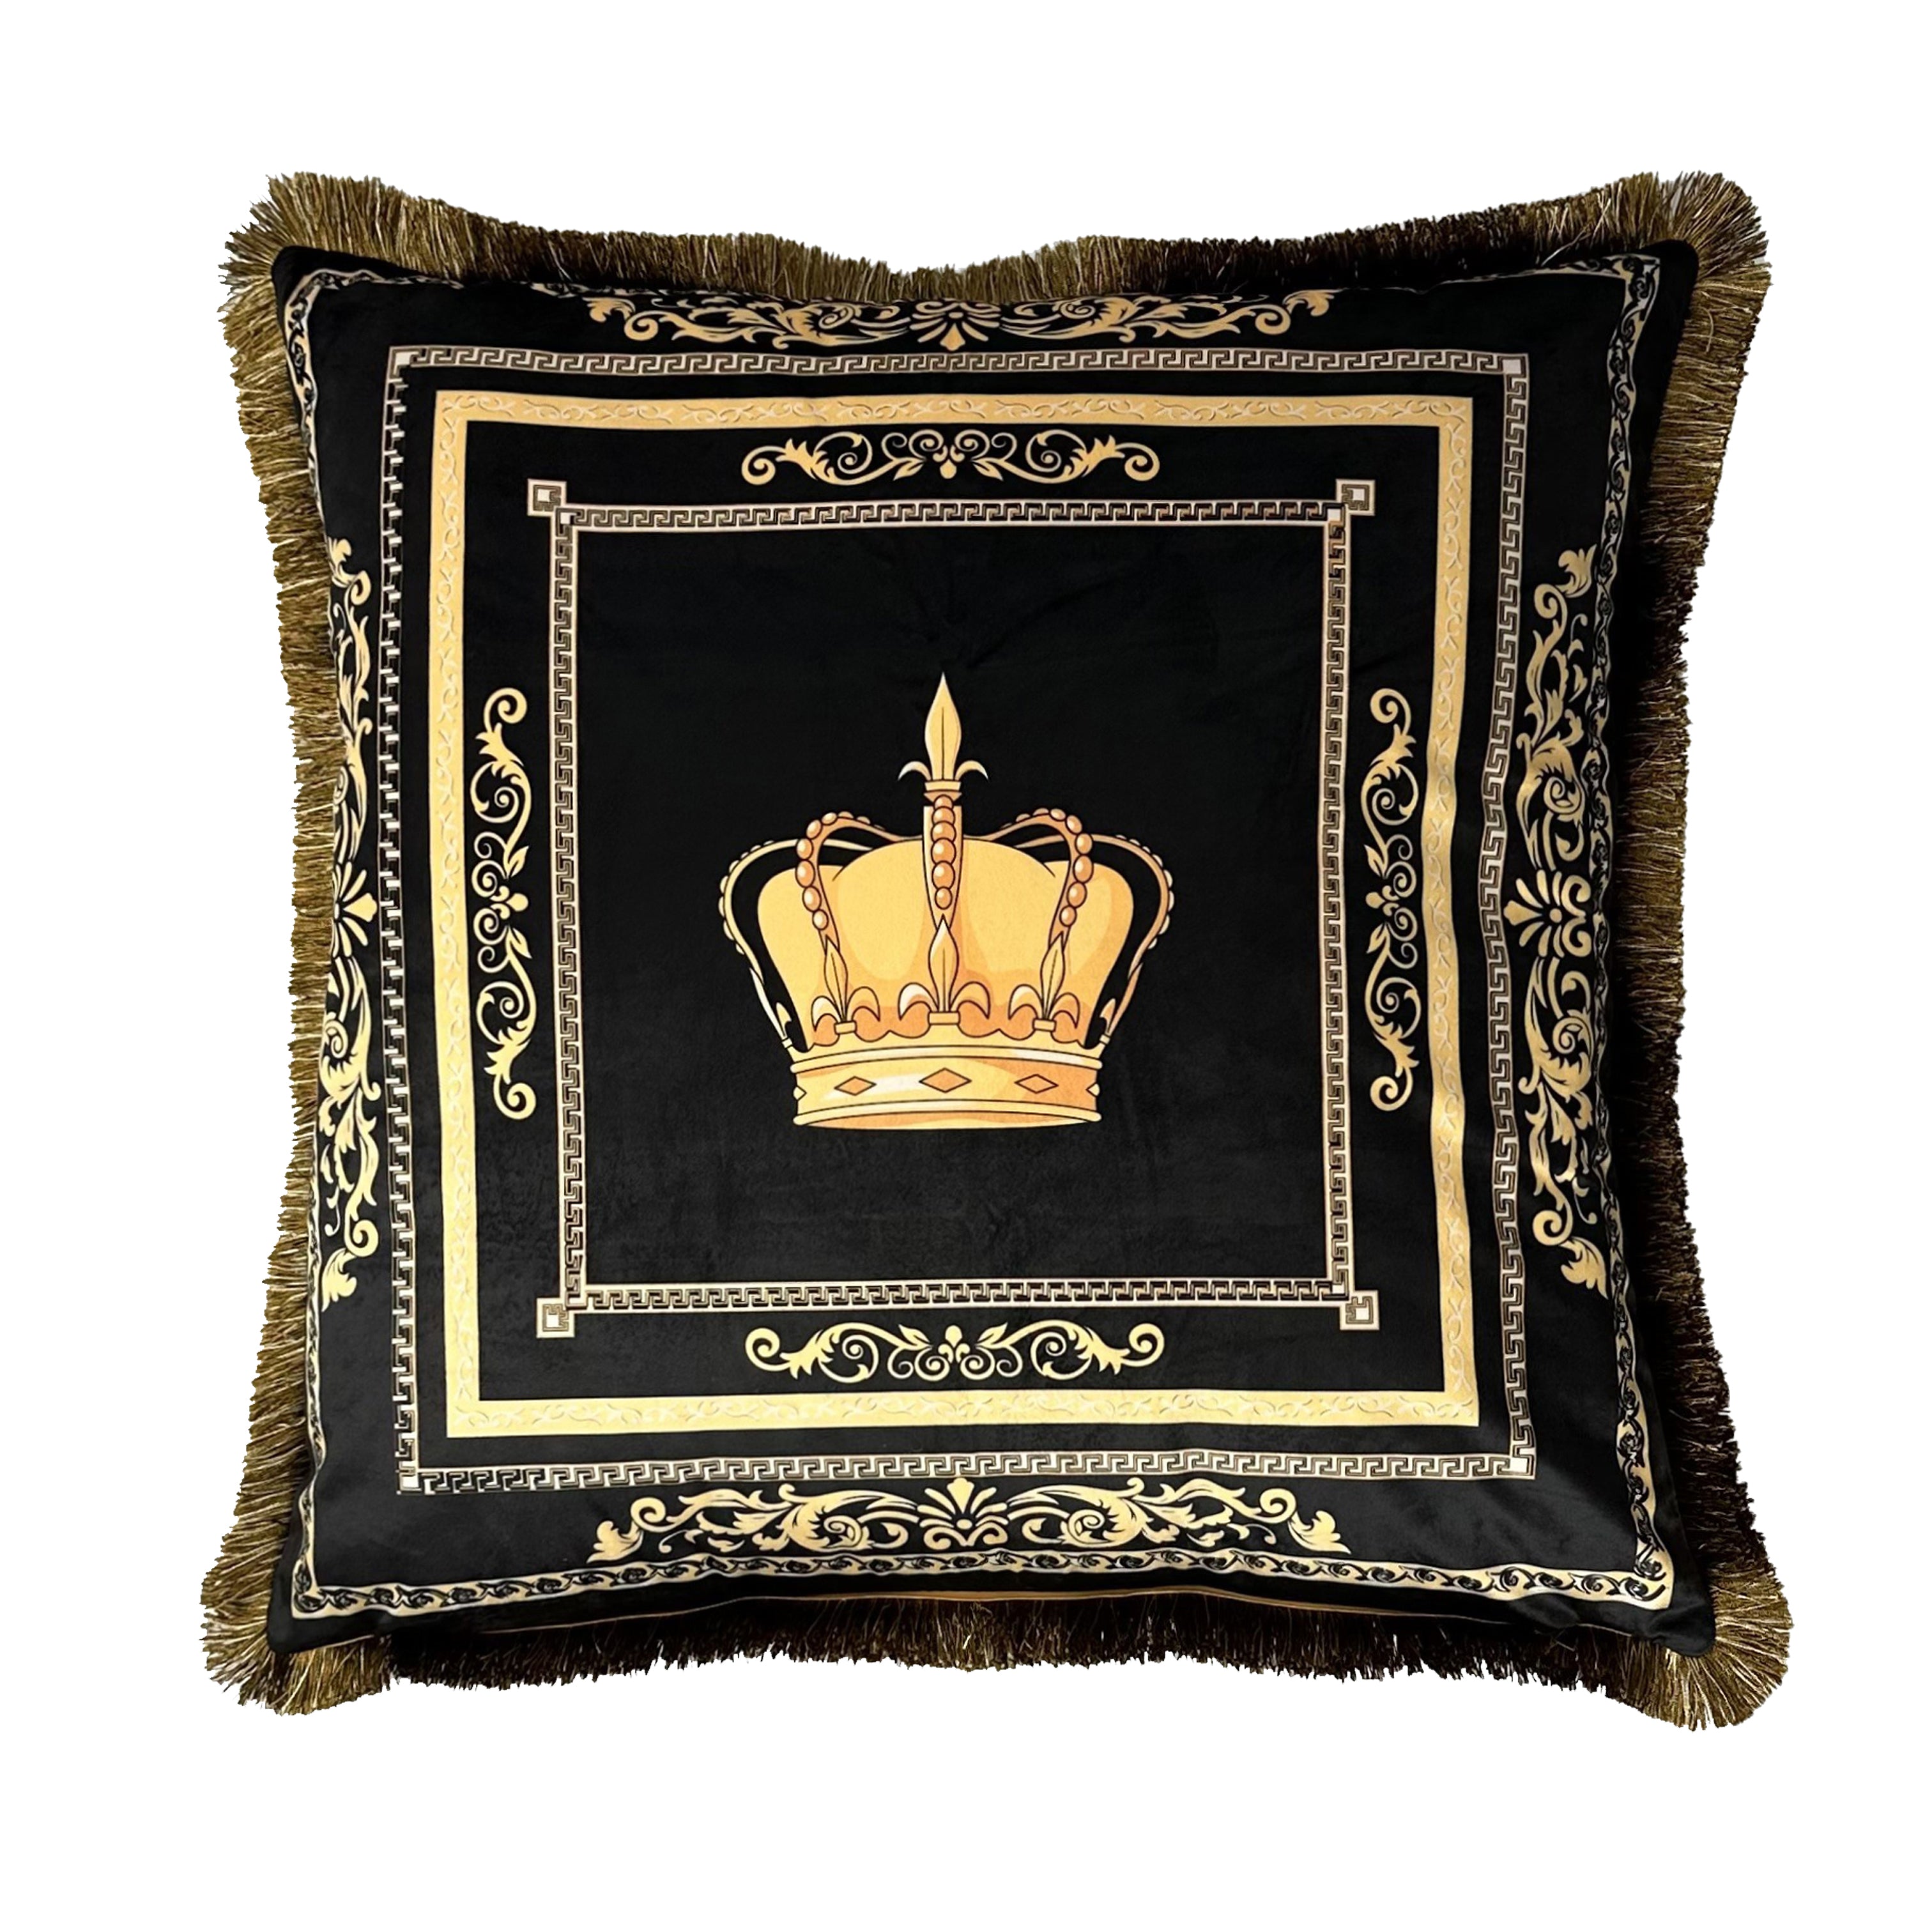 Dekorative Kissen mit Kissenbezug und Royal Motiv Krone schwarz gold in Seidenoptik